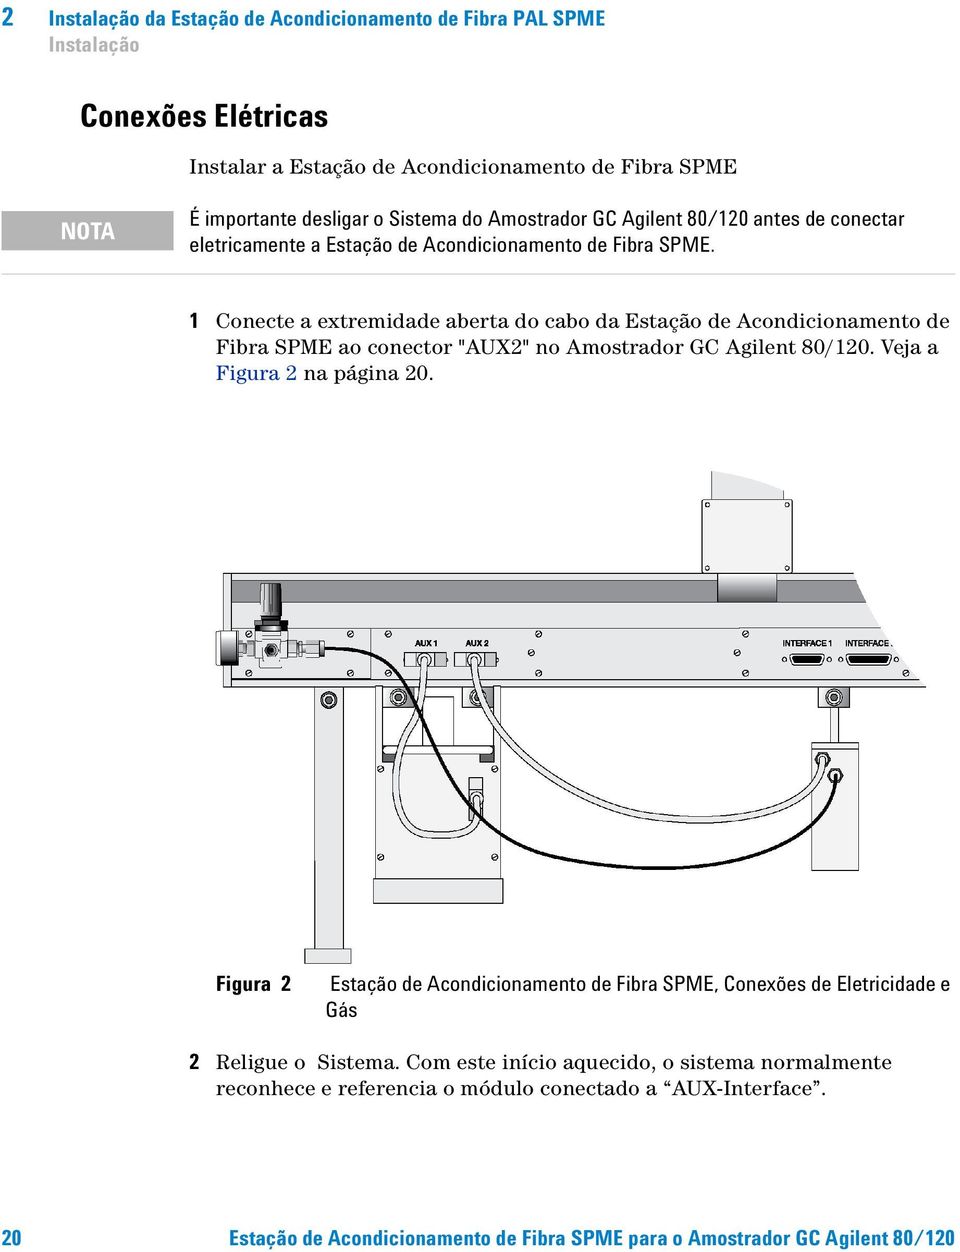 1 Conecte a extremidade aberta do cabo da Estação de Acondicionamento de Fibra SPME ao conector "AUX2" no Amostrador GC Agilent 80/120. Veja a Figura 2 na página 20.